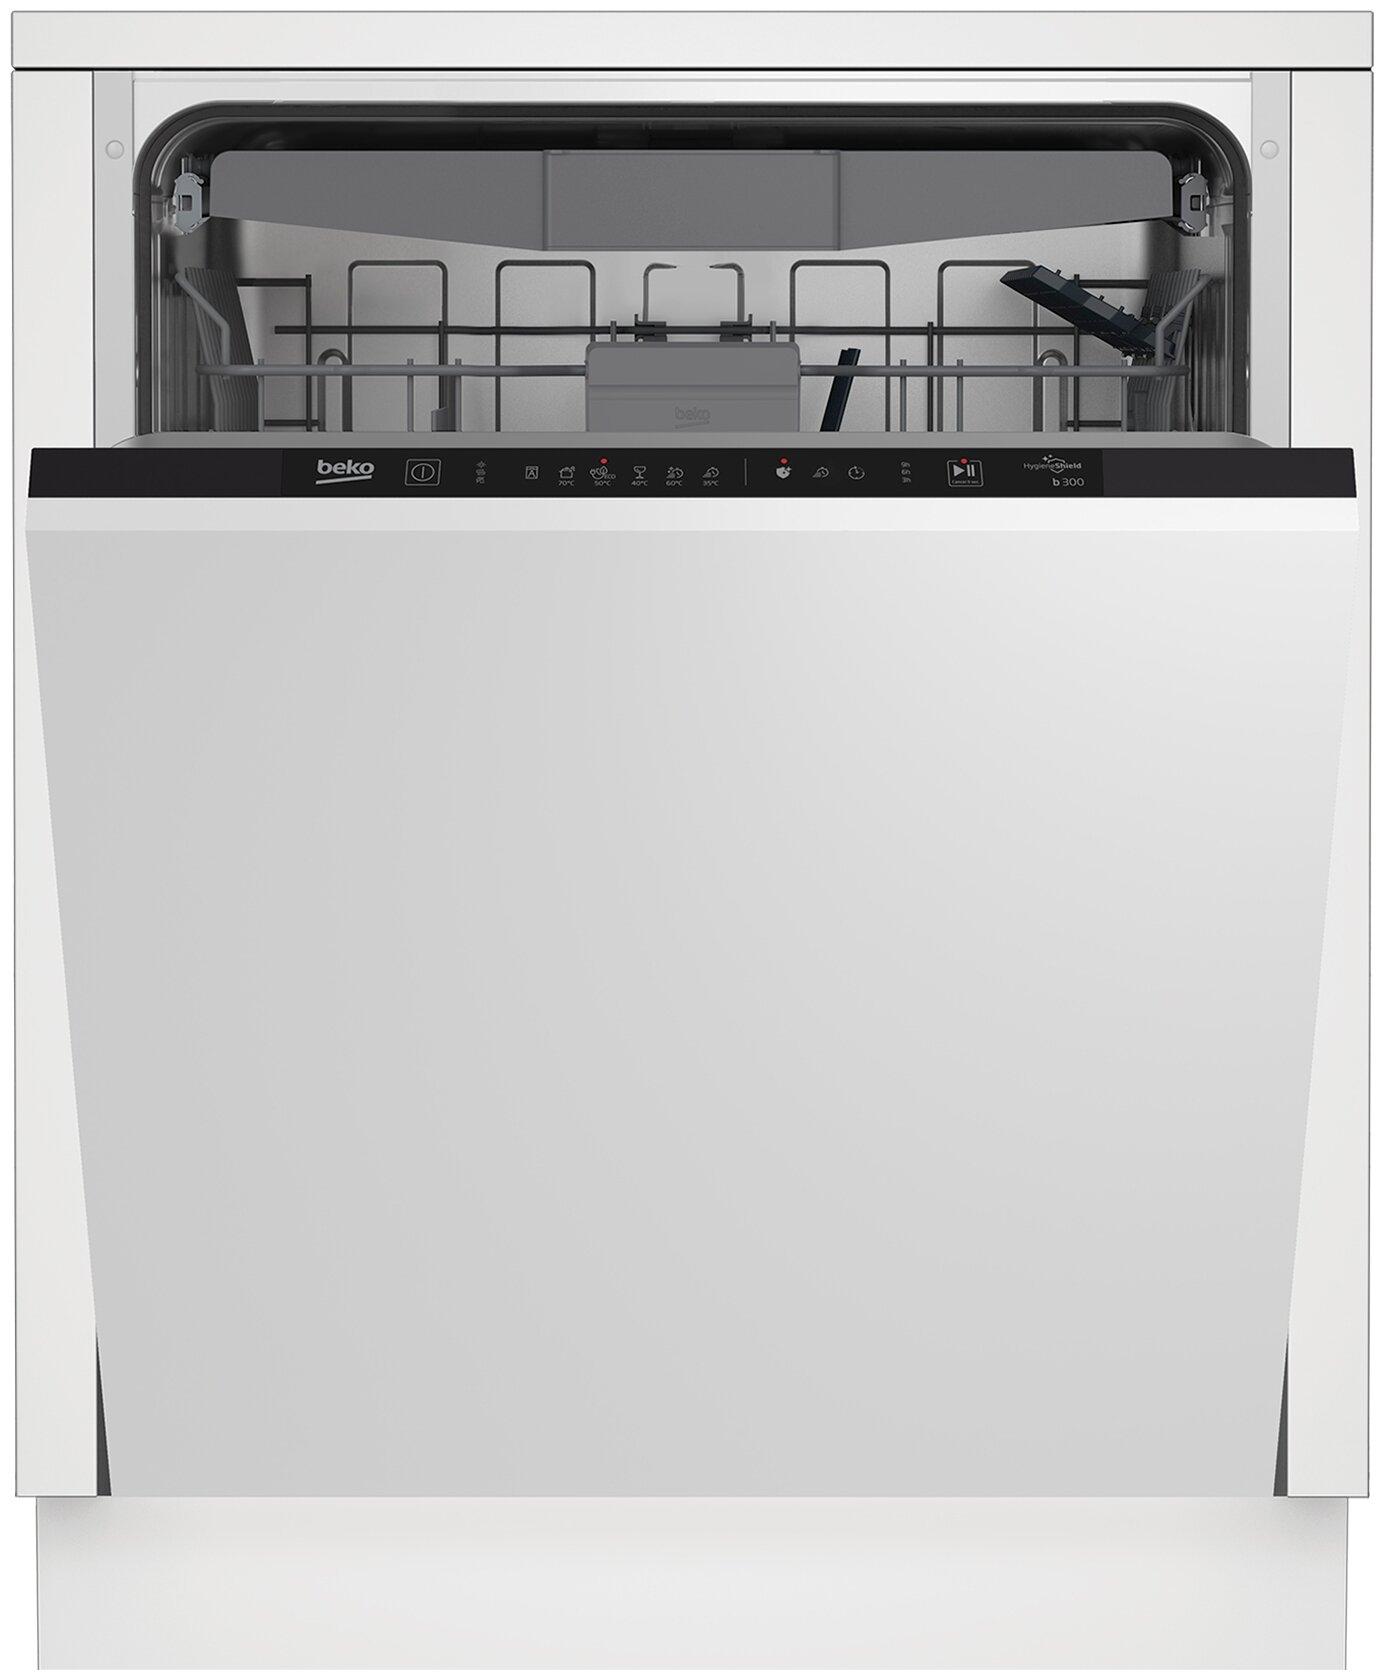 Встраиваемая посудомоечная машина Beko BDIN16520, полноразмерная, ширина 59.8см, полновстраиваемая, загрузка 15 комплектов